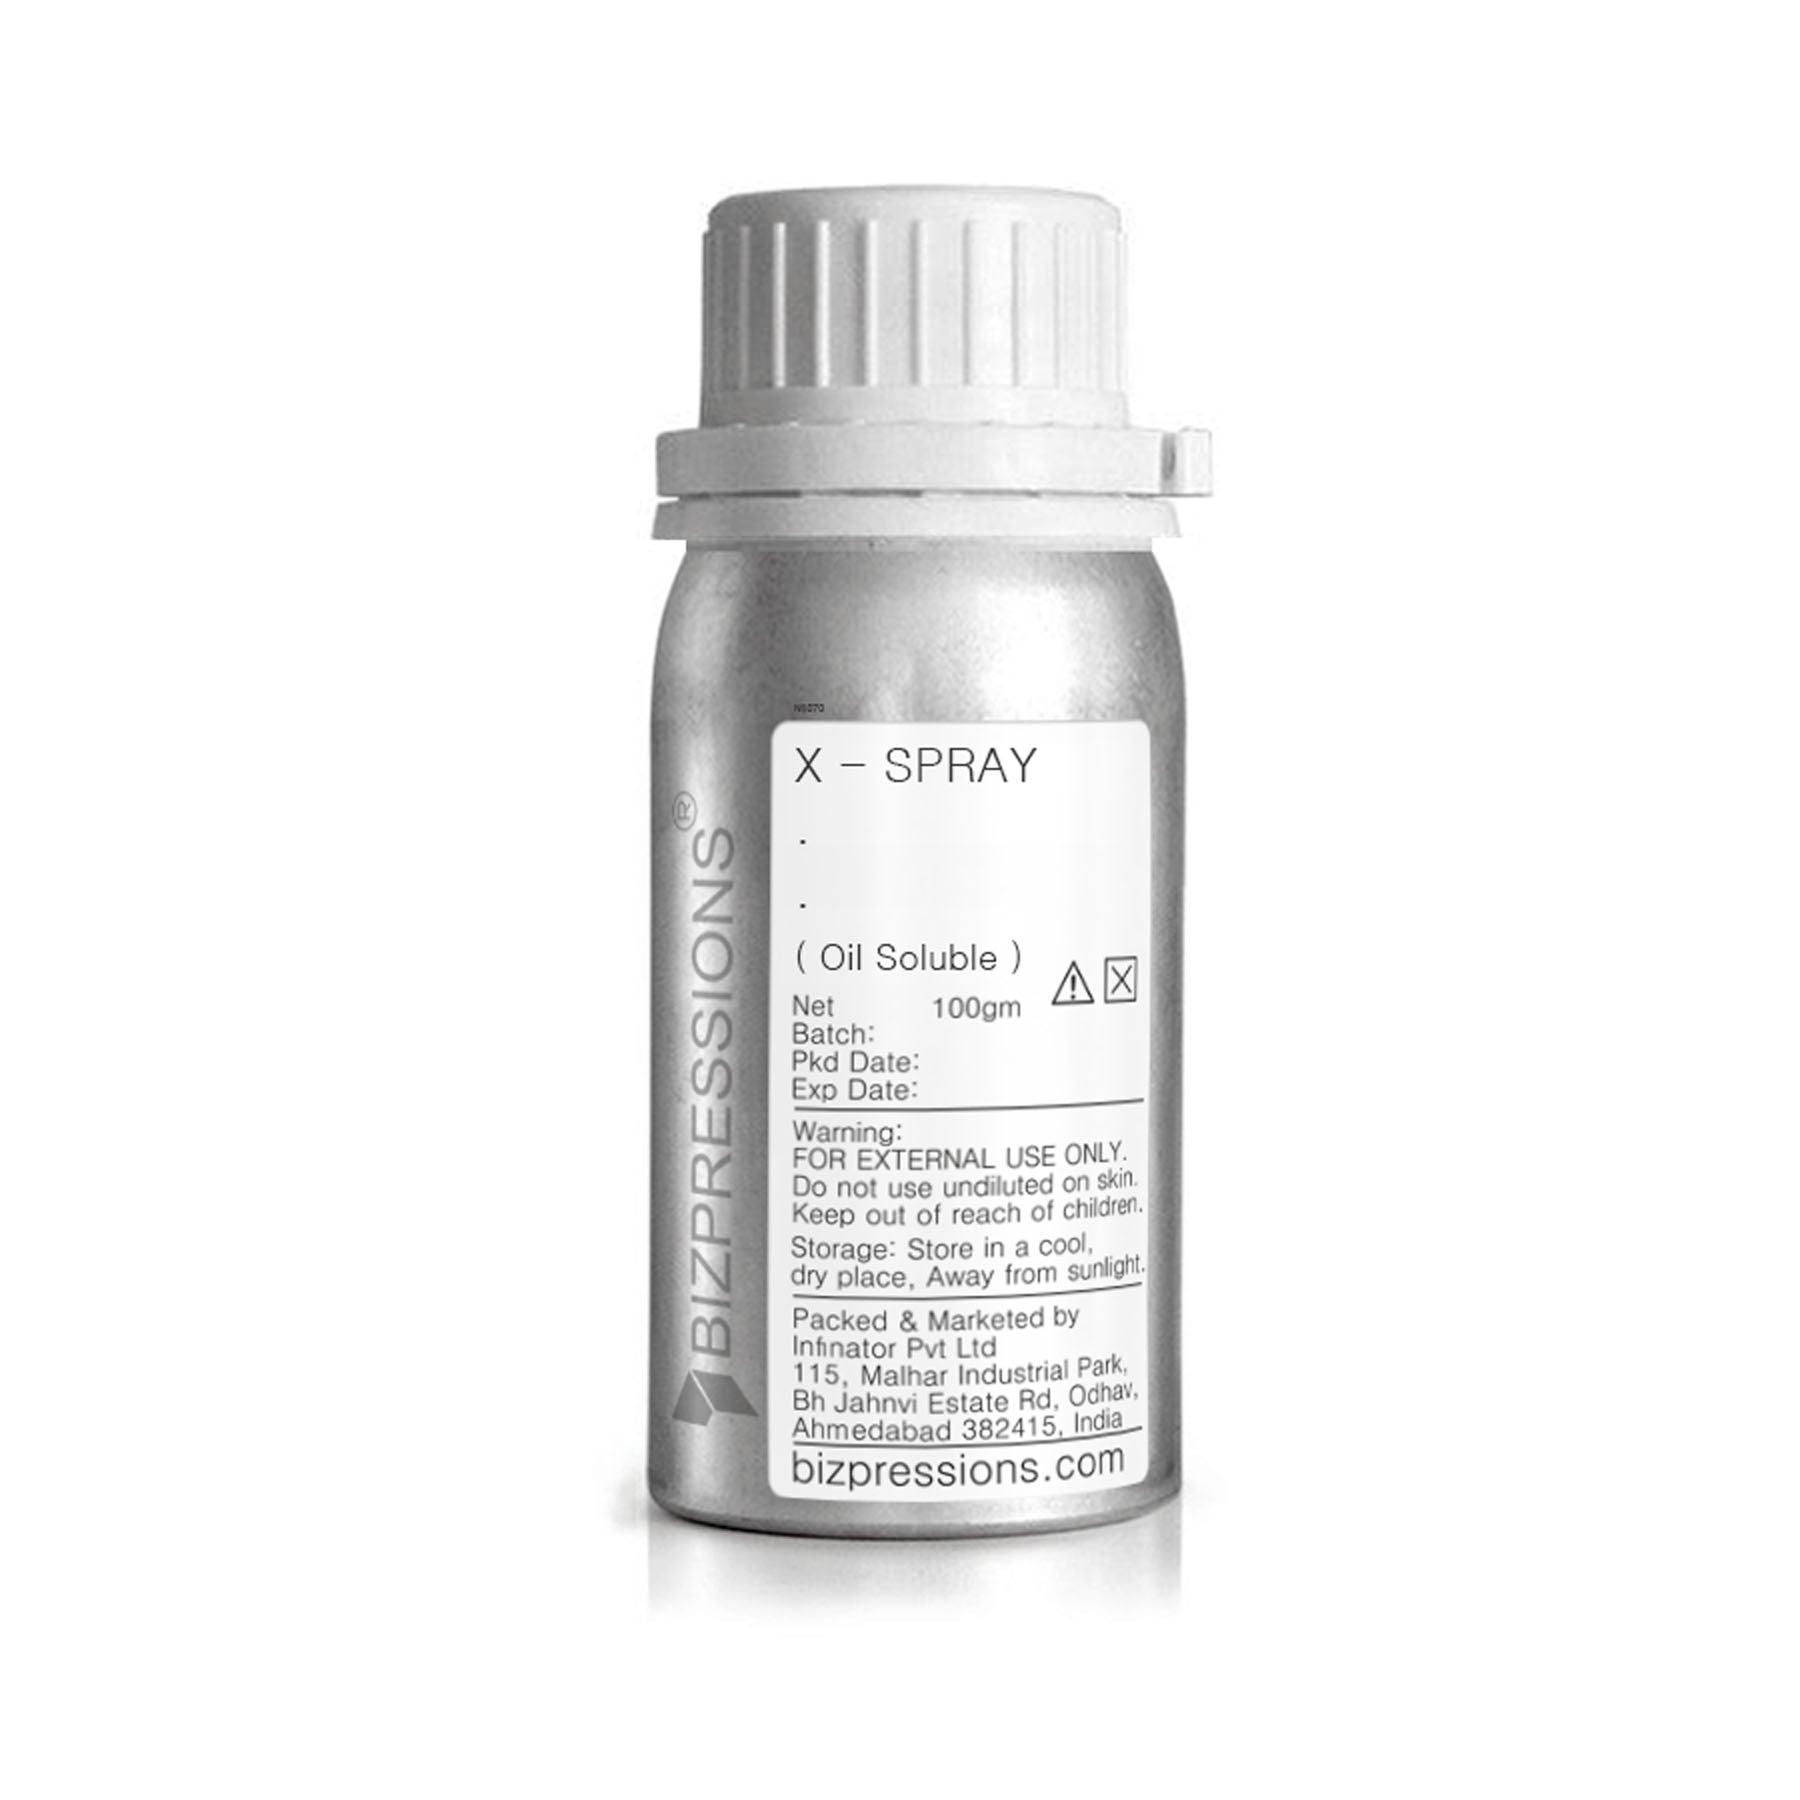 X - SPRAY - Fragrance ( Oil Soluble ) - 100 gm